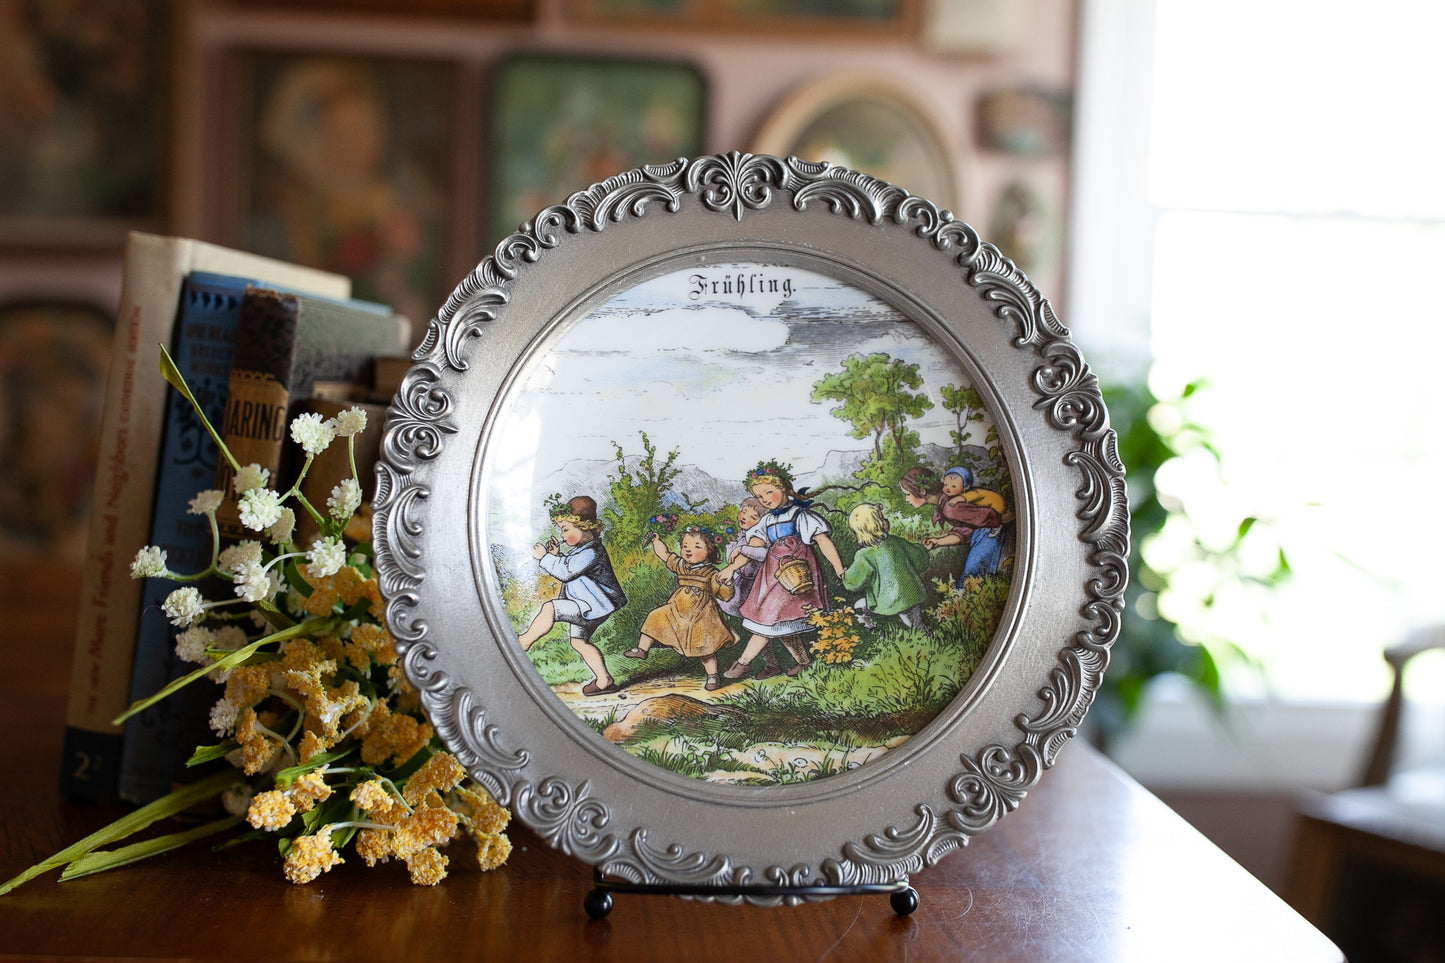 Collectible Porcelain Plate with Pewter Frame,  Pewter German Plate, Fruhling, Vintage, Scherzer Bavarian Germany, Children Frolicking Scene